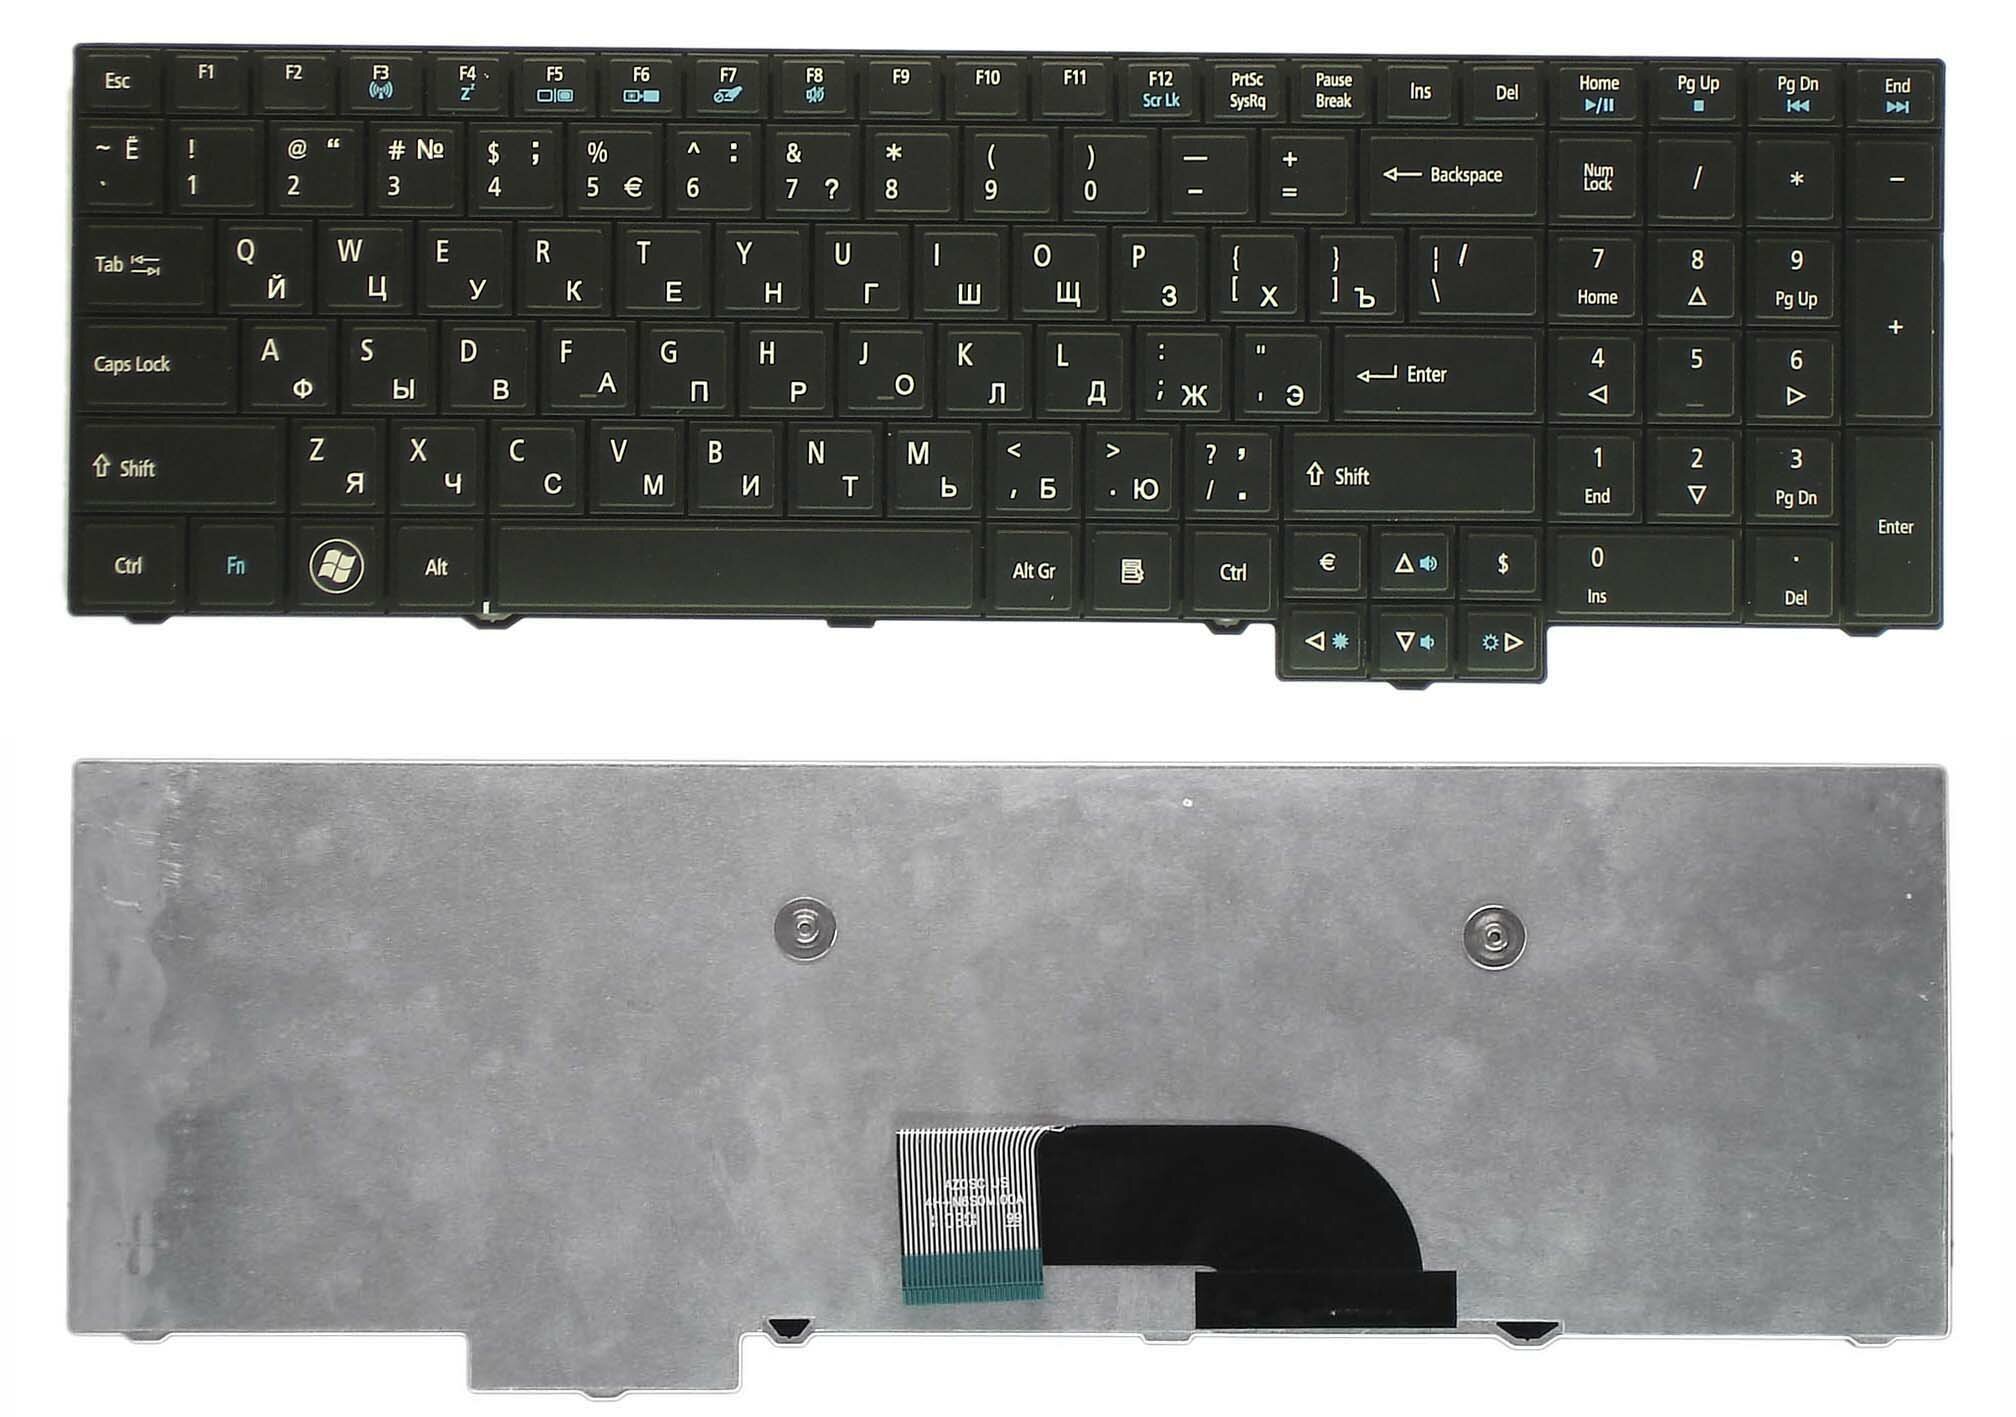 Клавиатура для ноутбука Acer Travelmate 5760 8573 черная